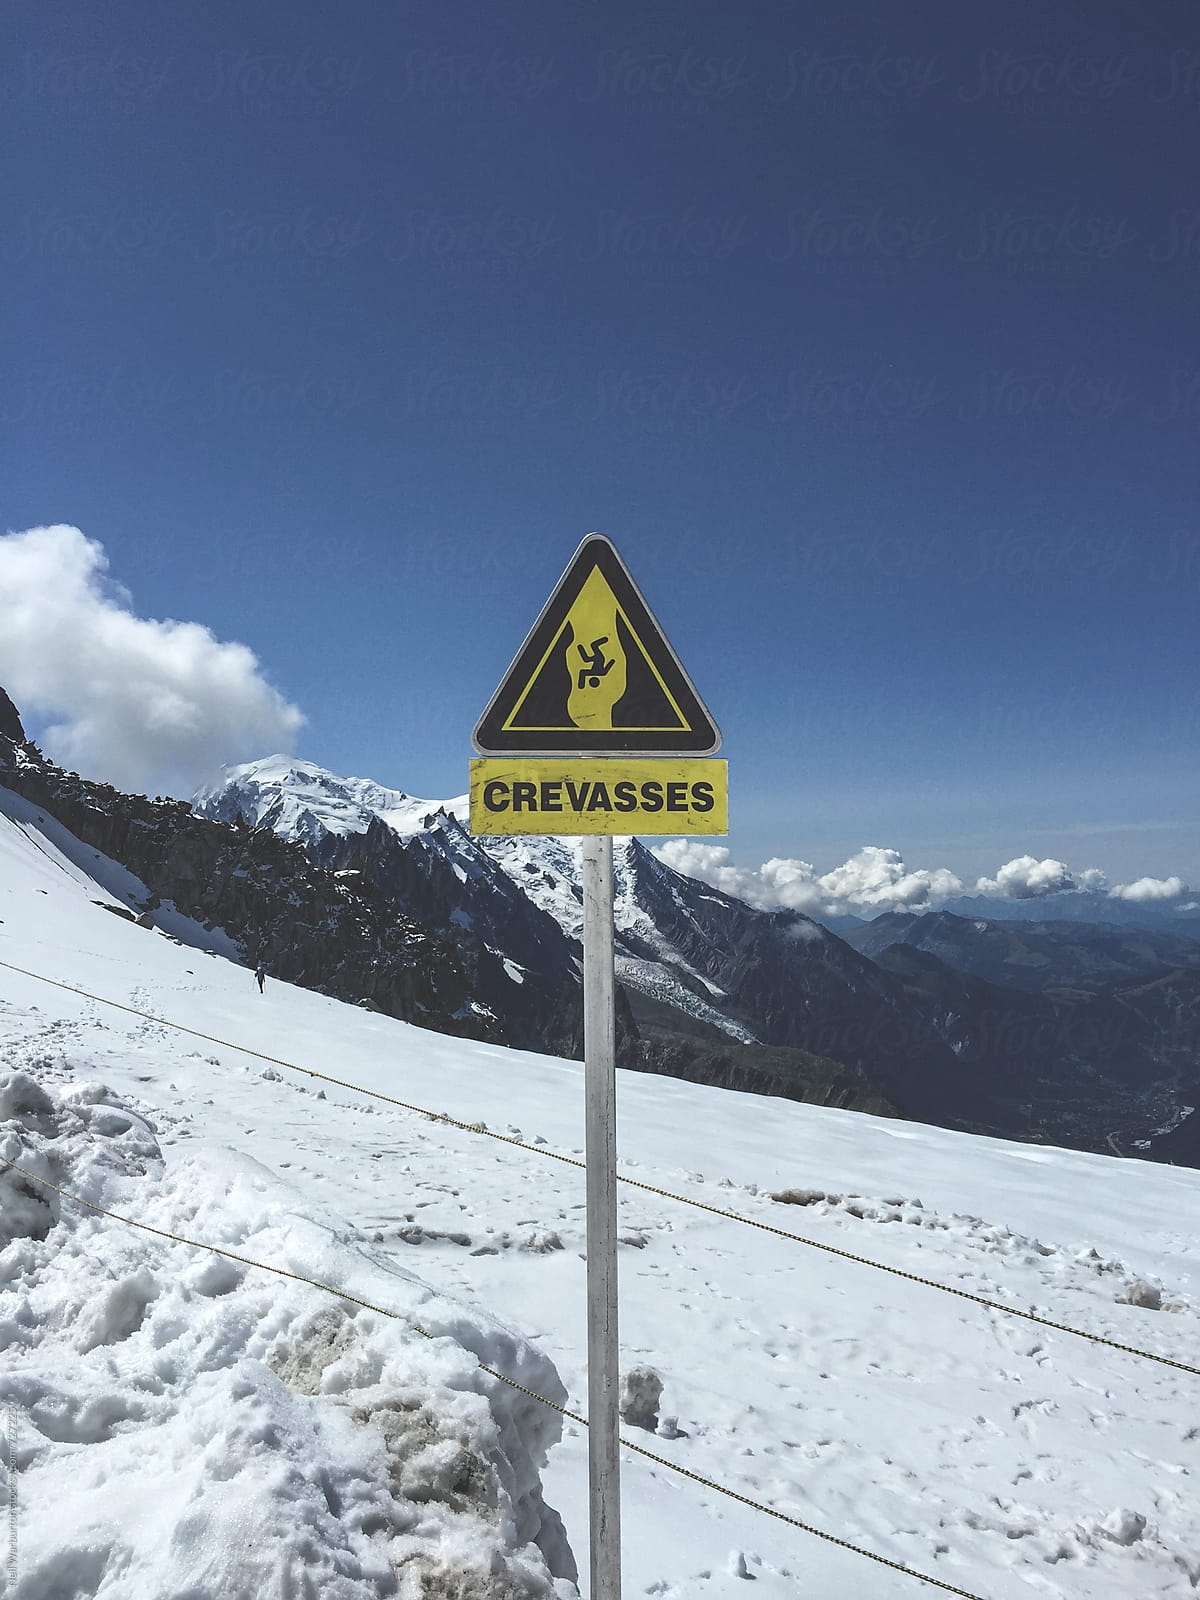 Crevasse warning sign